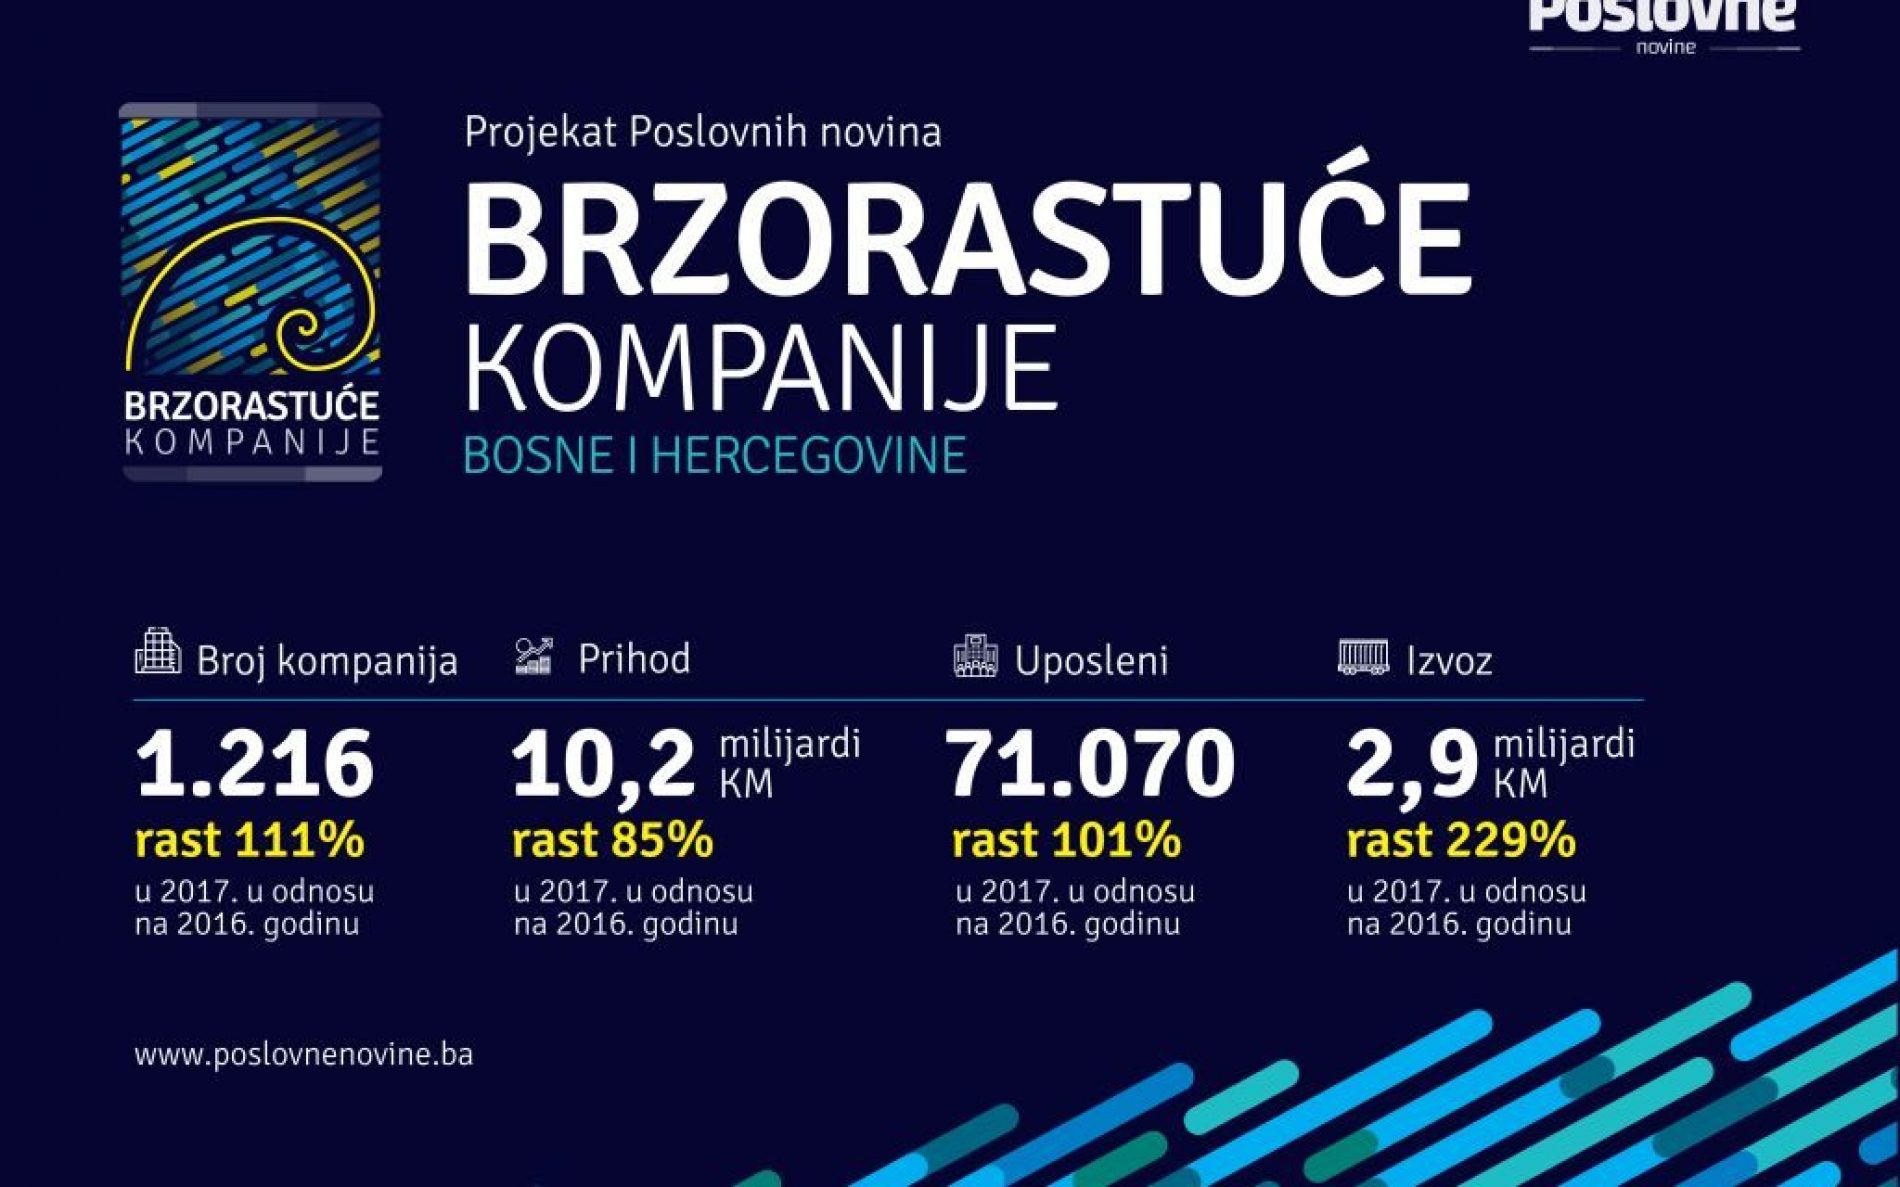 Nevjerovatan rast brzorastućih kompanija u Bosni i Hercegovini